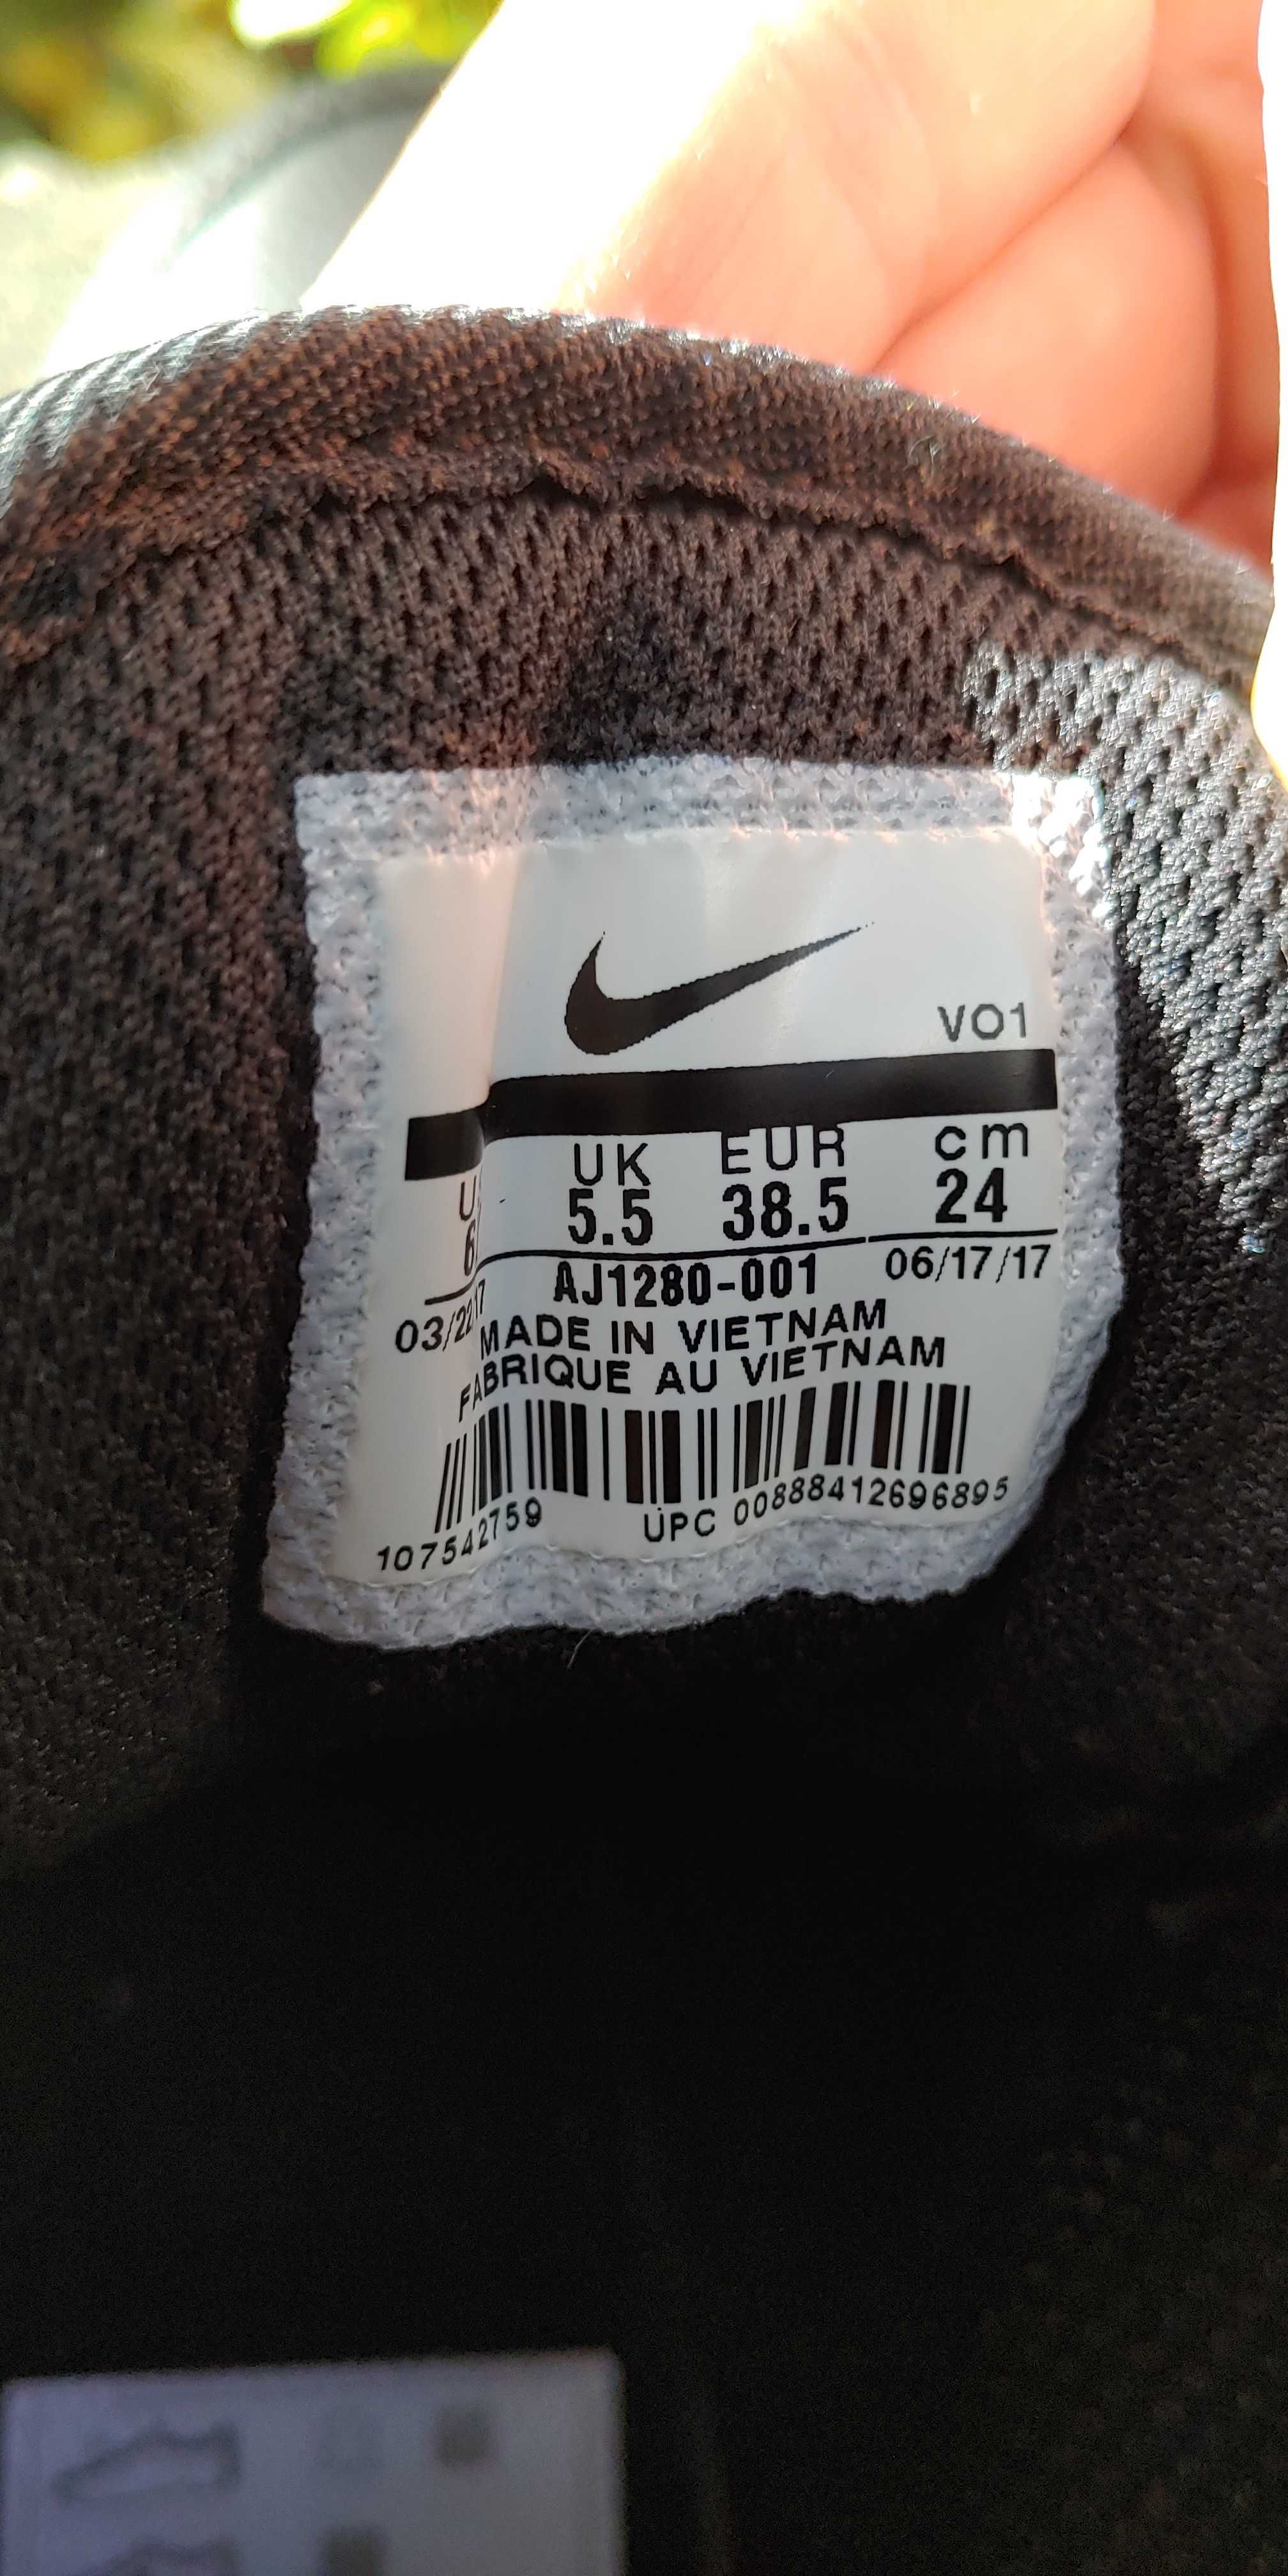 Buty Nike 38,5 wysokie używane przez tydzień! Długość wkładki 24 cm.